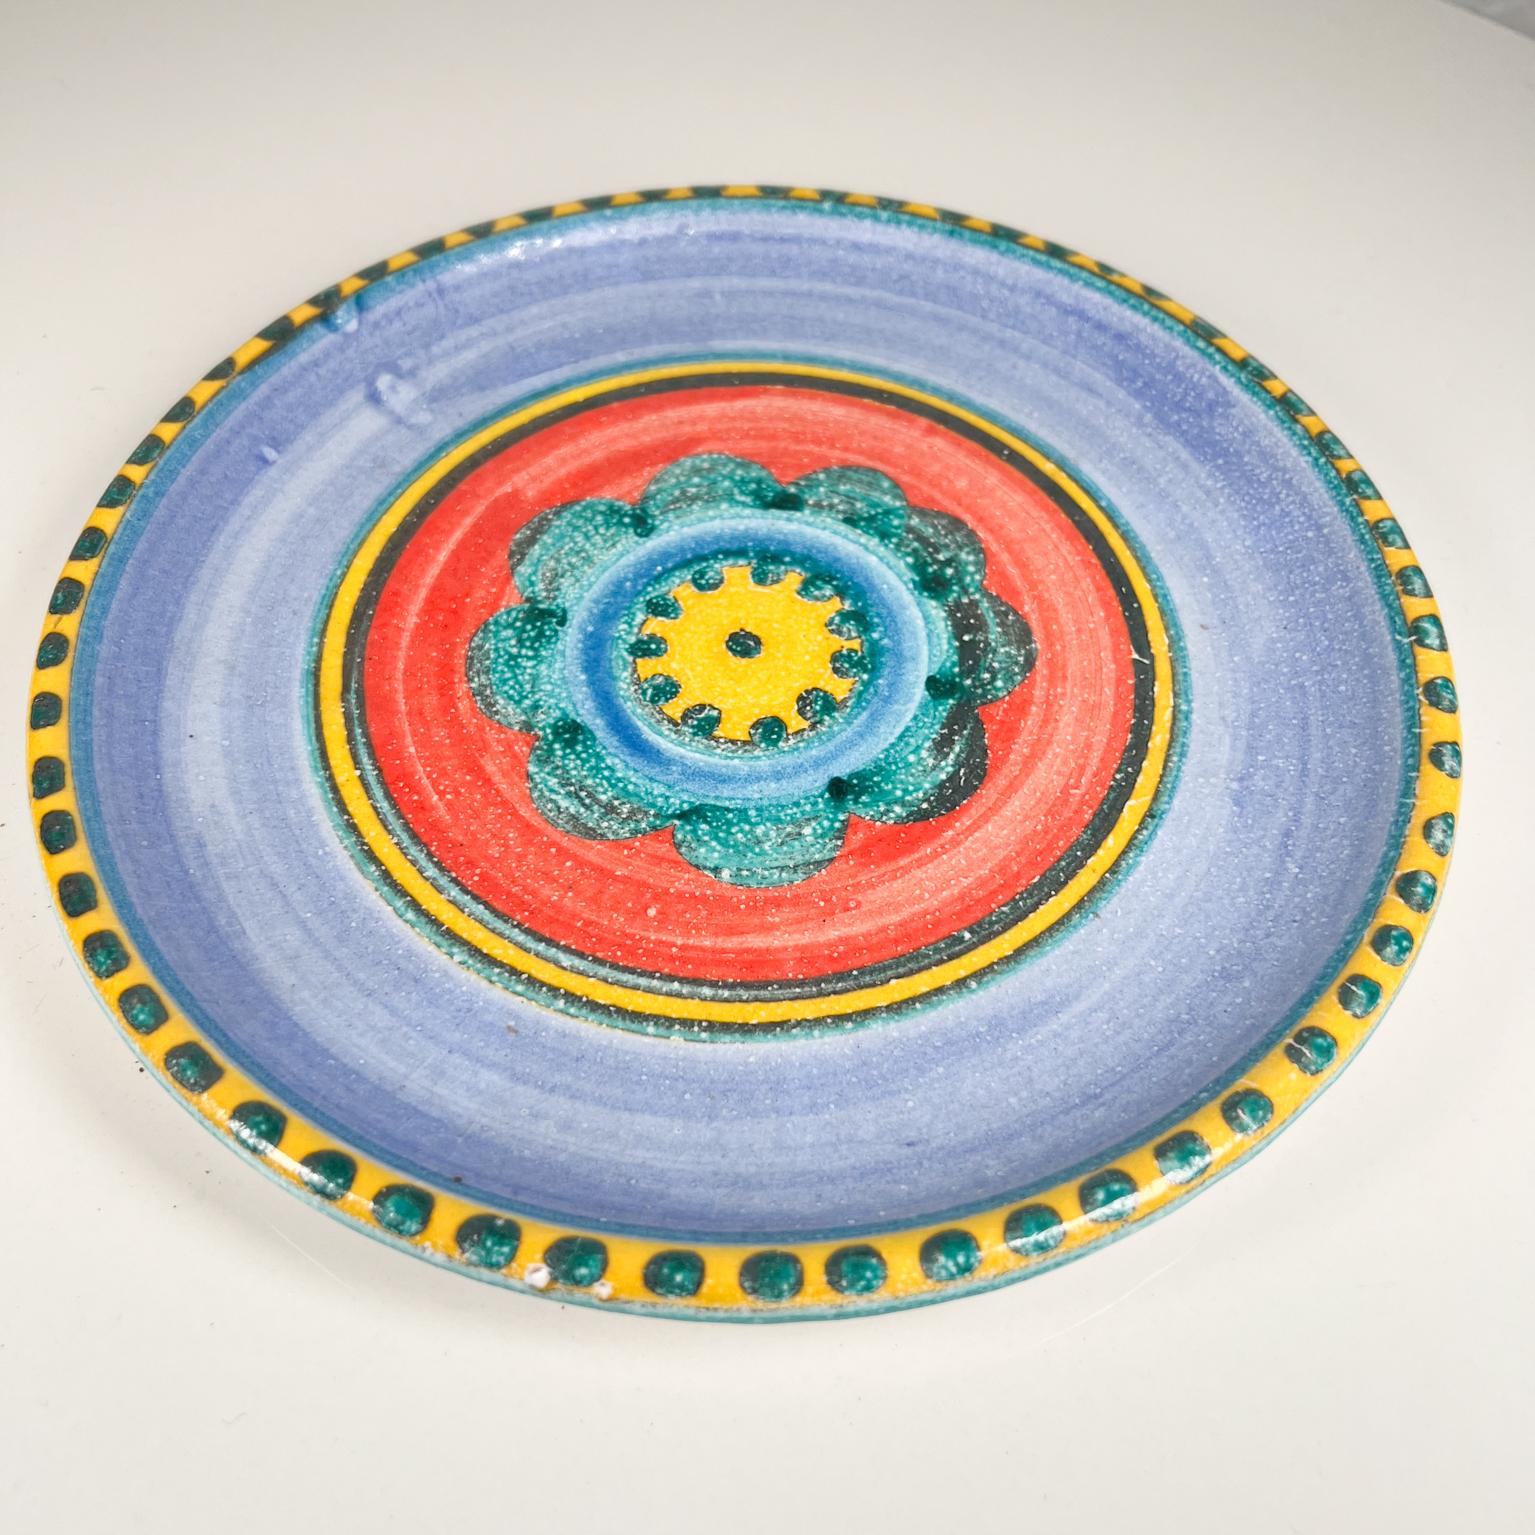 1960s, DeSimone pottery of Italy colorful ceramic art hand painted blue flower plate.
Giovanni Desimone Italie.
Fleur bleue colorée.
Mesures : 8,88 de diamètre x 0,88 de hauteur.
Inscription au dos : DeSimone A 13.
État vintage